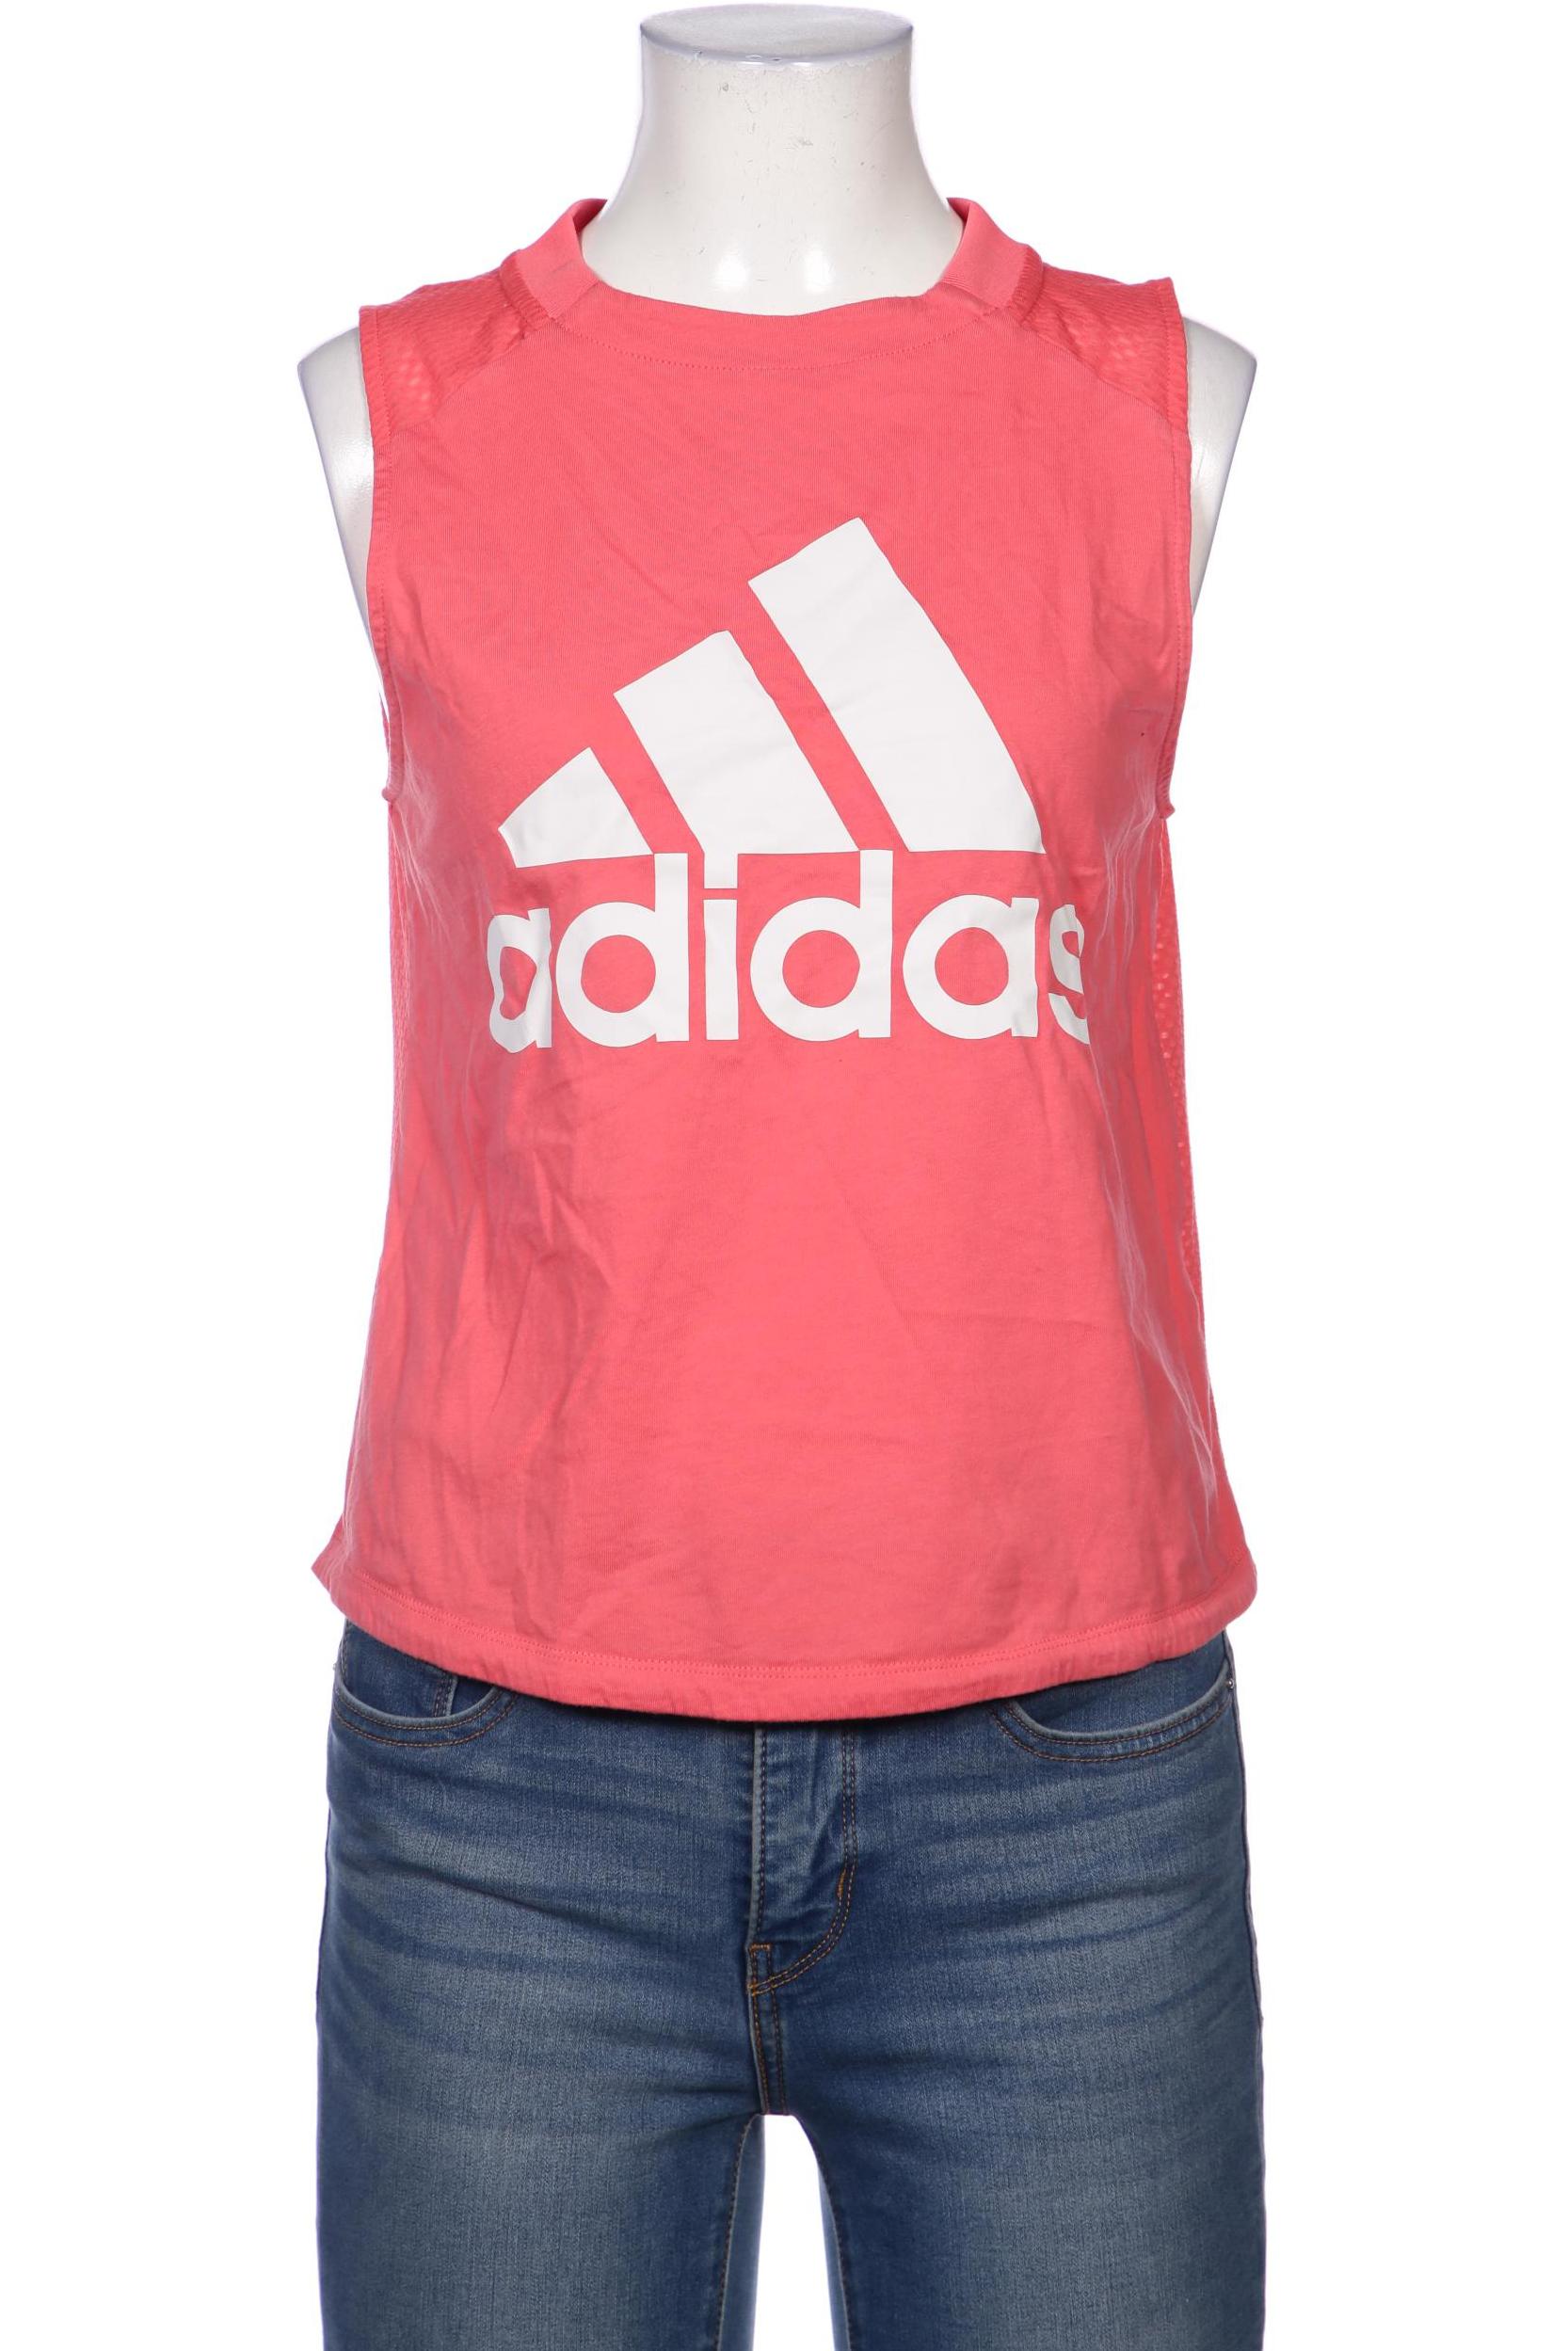 adidas Damen Top, pink von Adidas